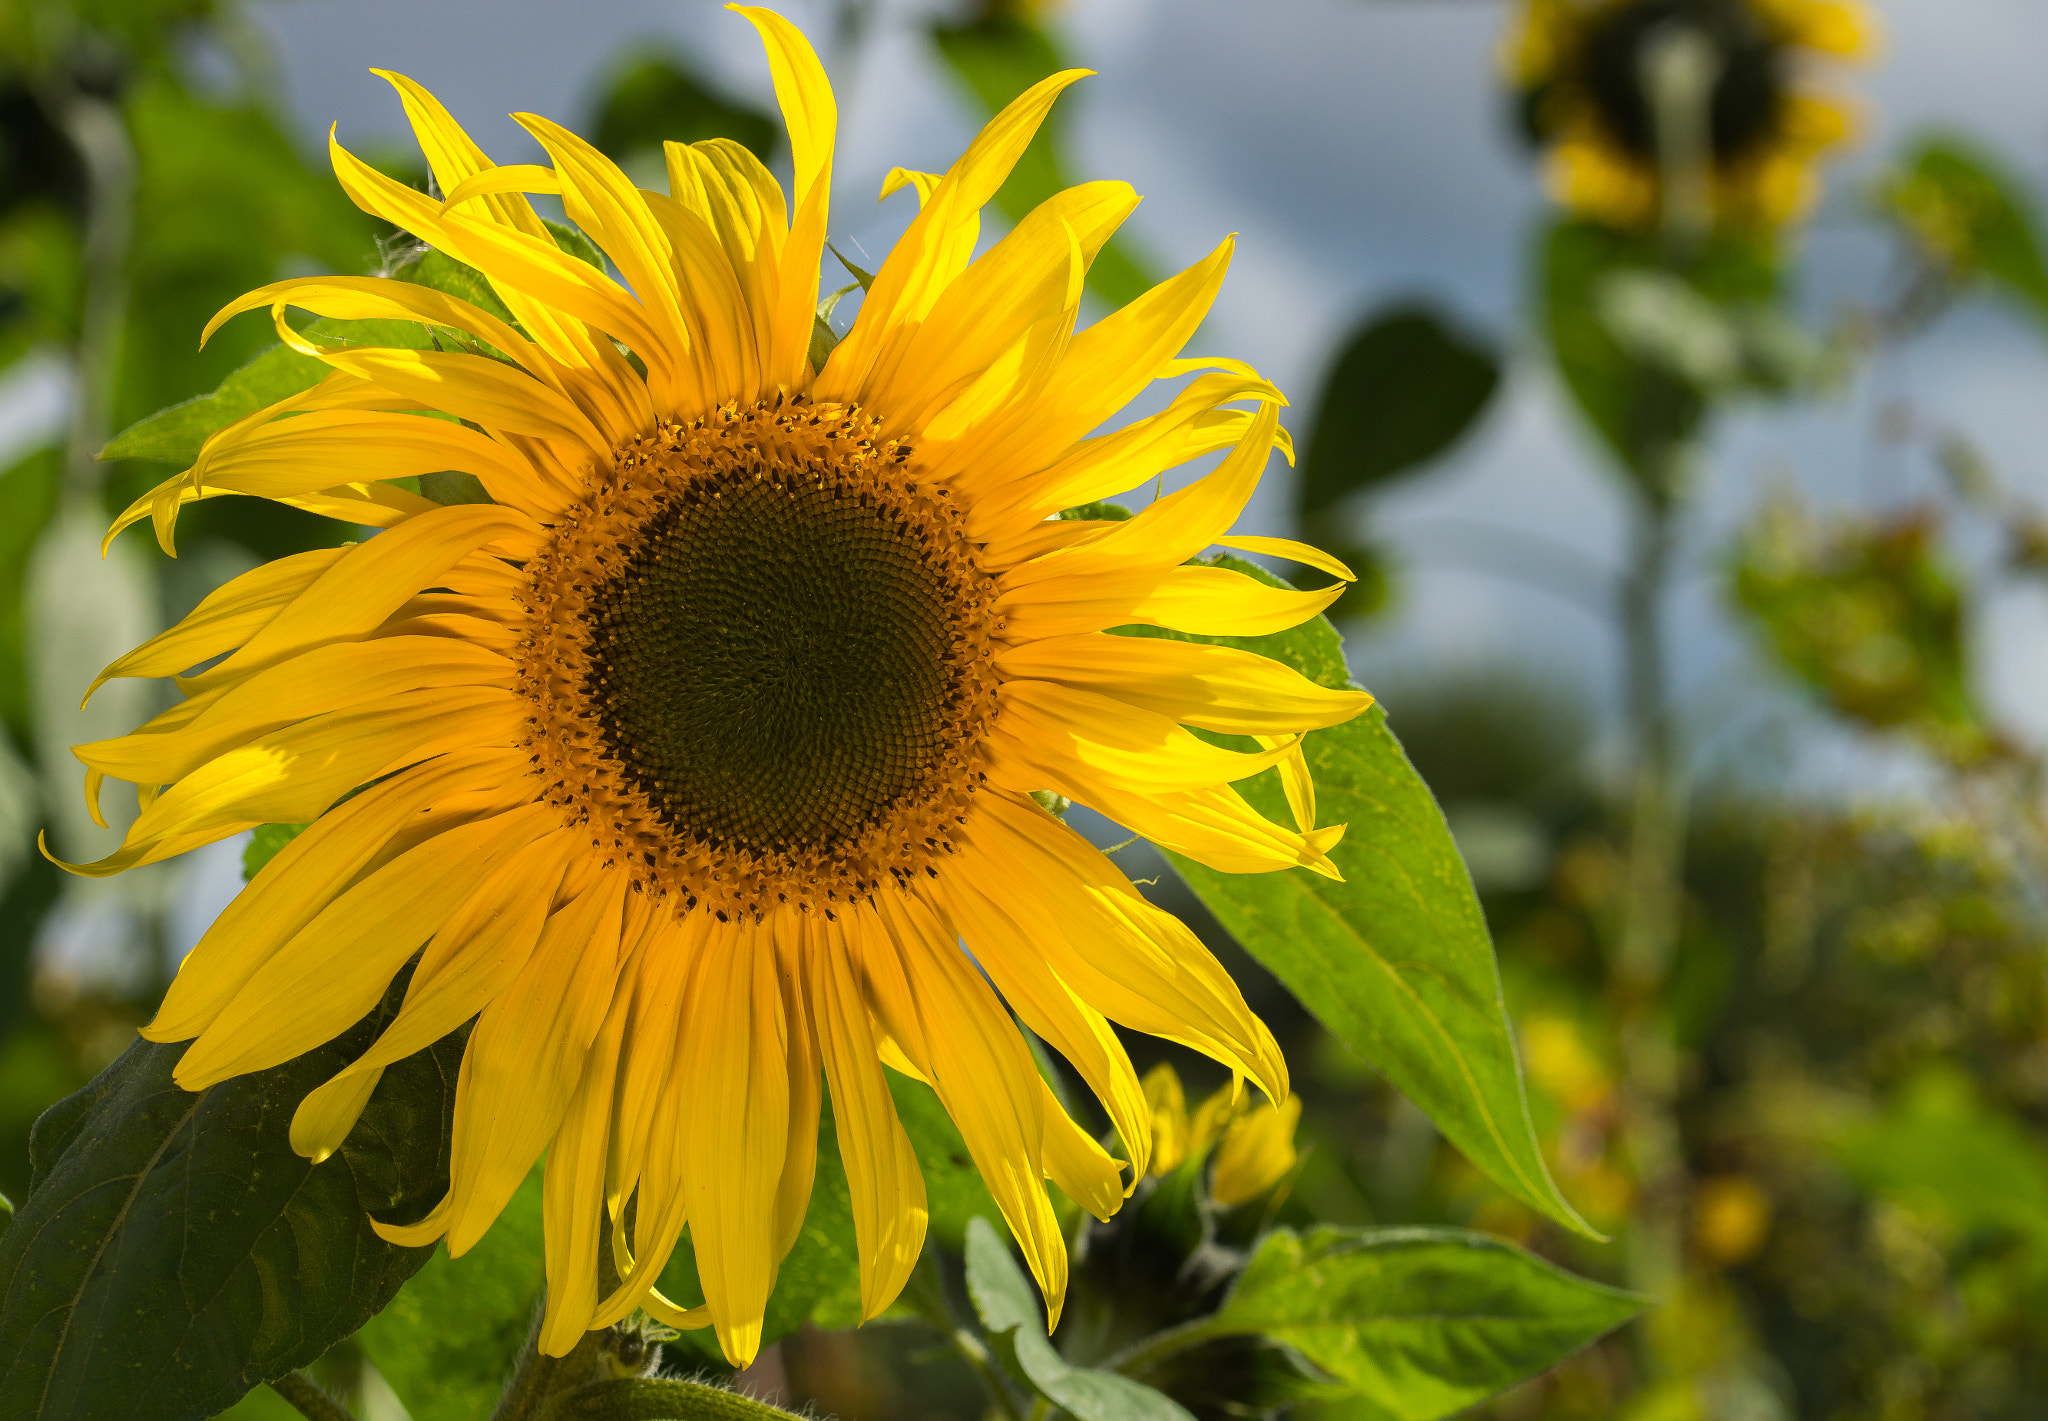 Sony SLT-A77 sample photo. Sunflower photography